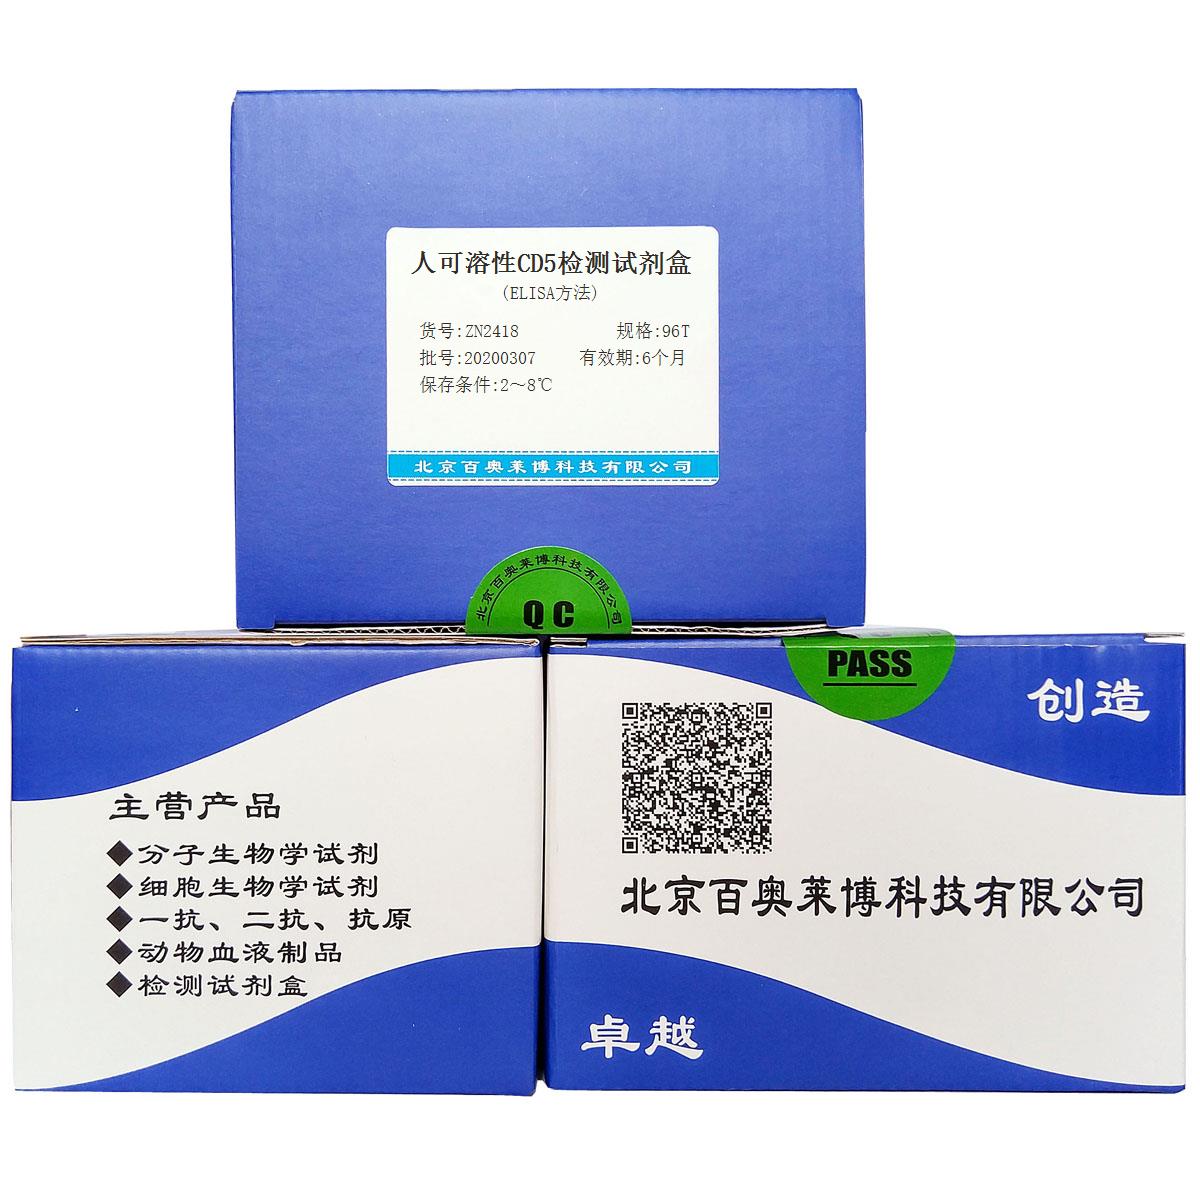 人可溶性CD5检测试剂盒(ELISA方法)